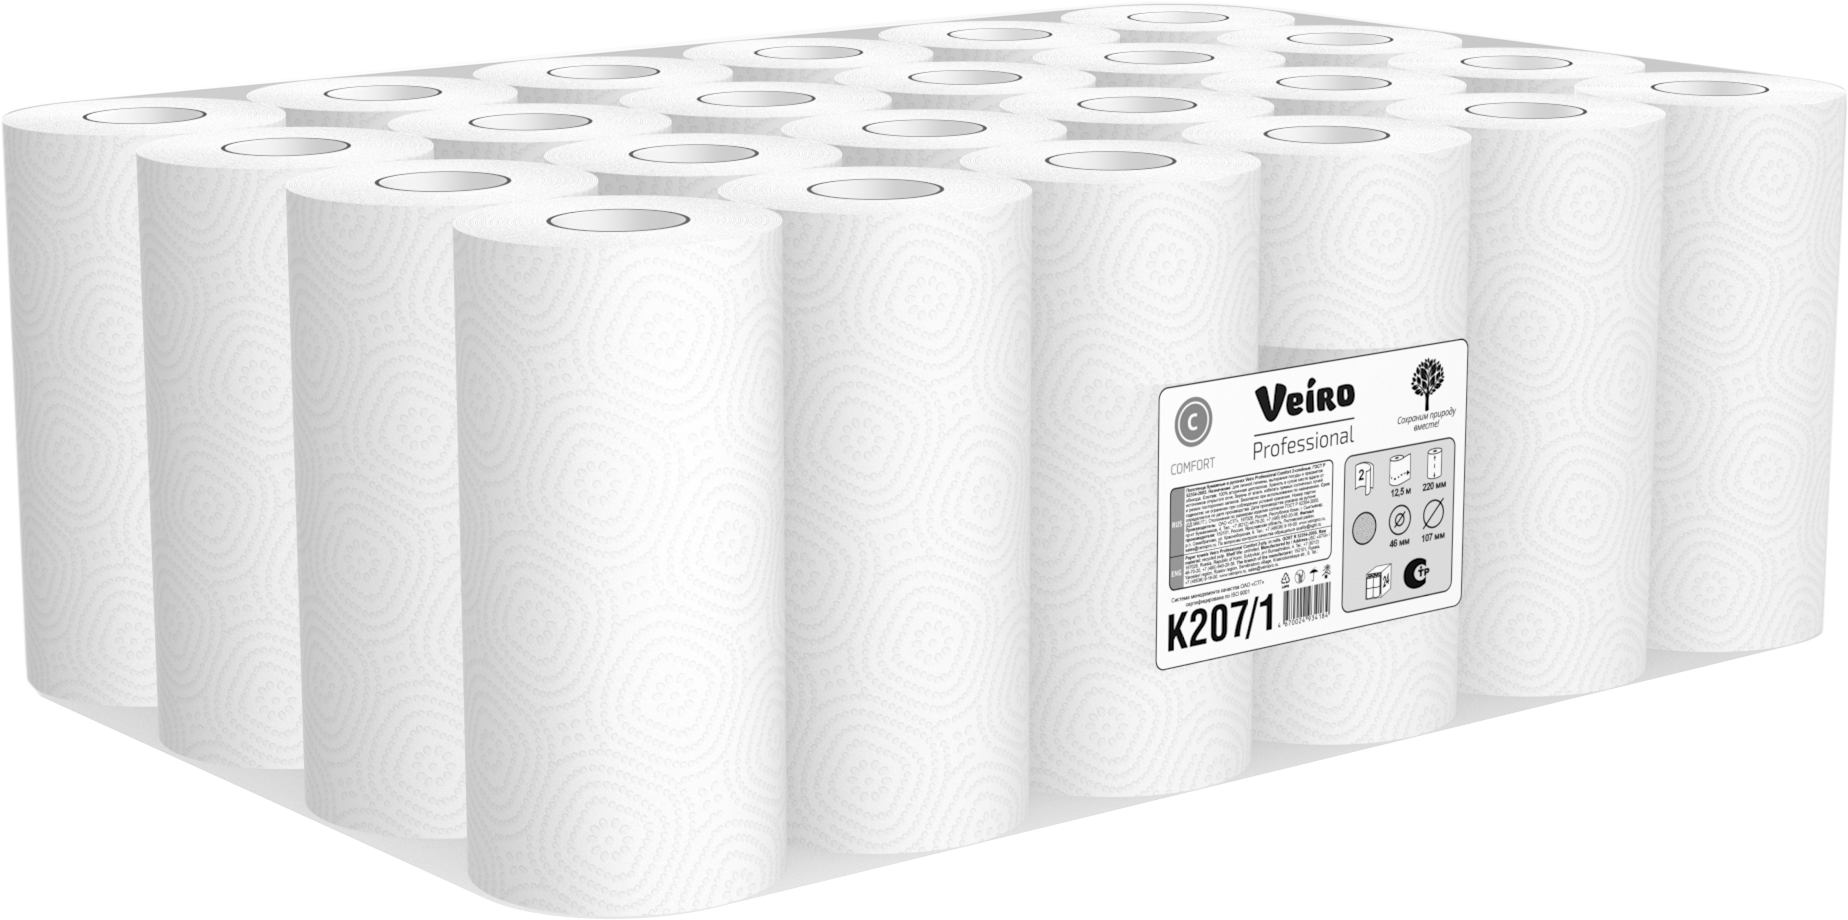 Полотенца бумажные рулонные Veiro Professional Comfort K207/1 двухслойные, 1 упаковка - 24 рулона по 12,5 метров